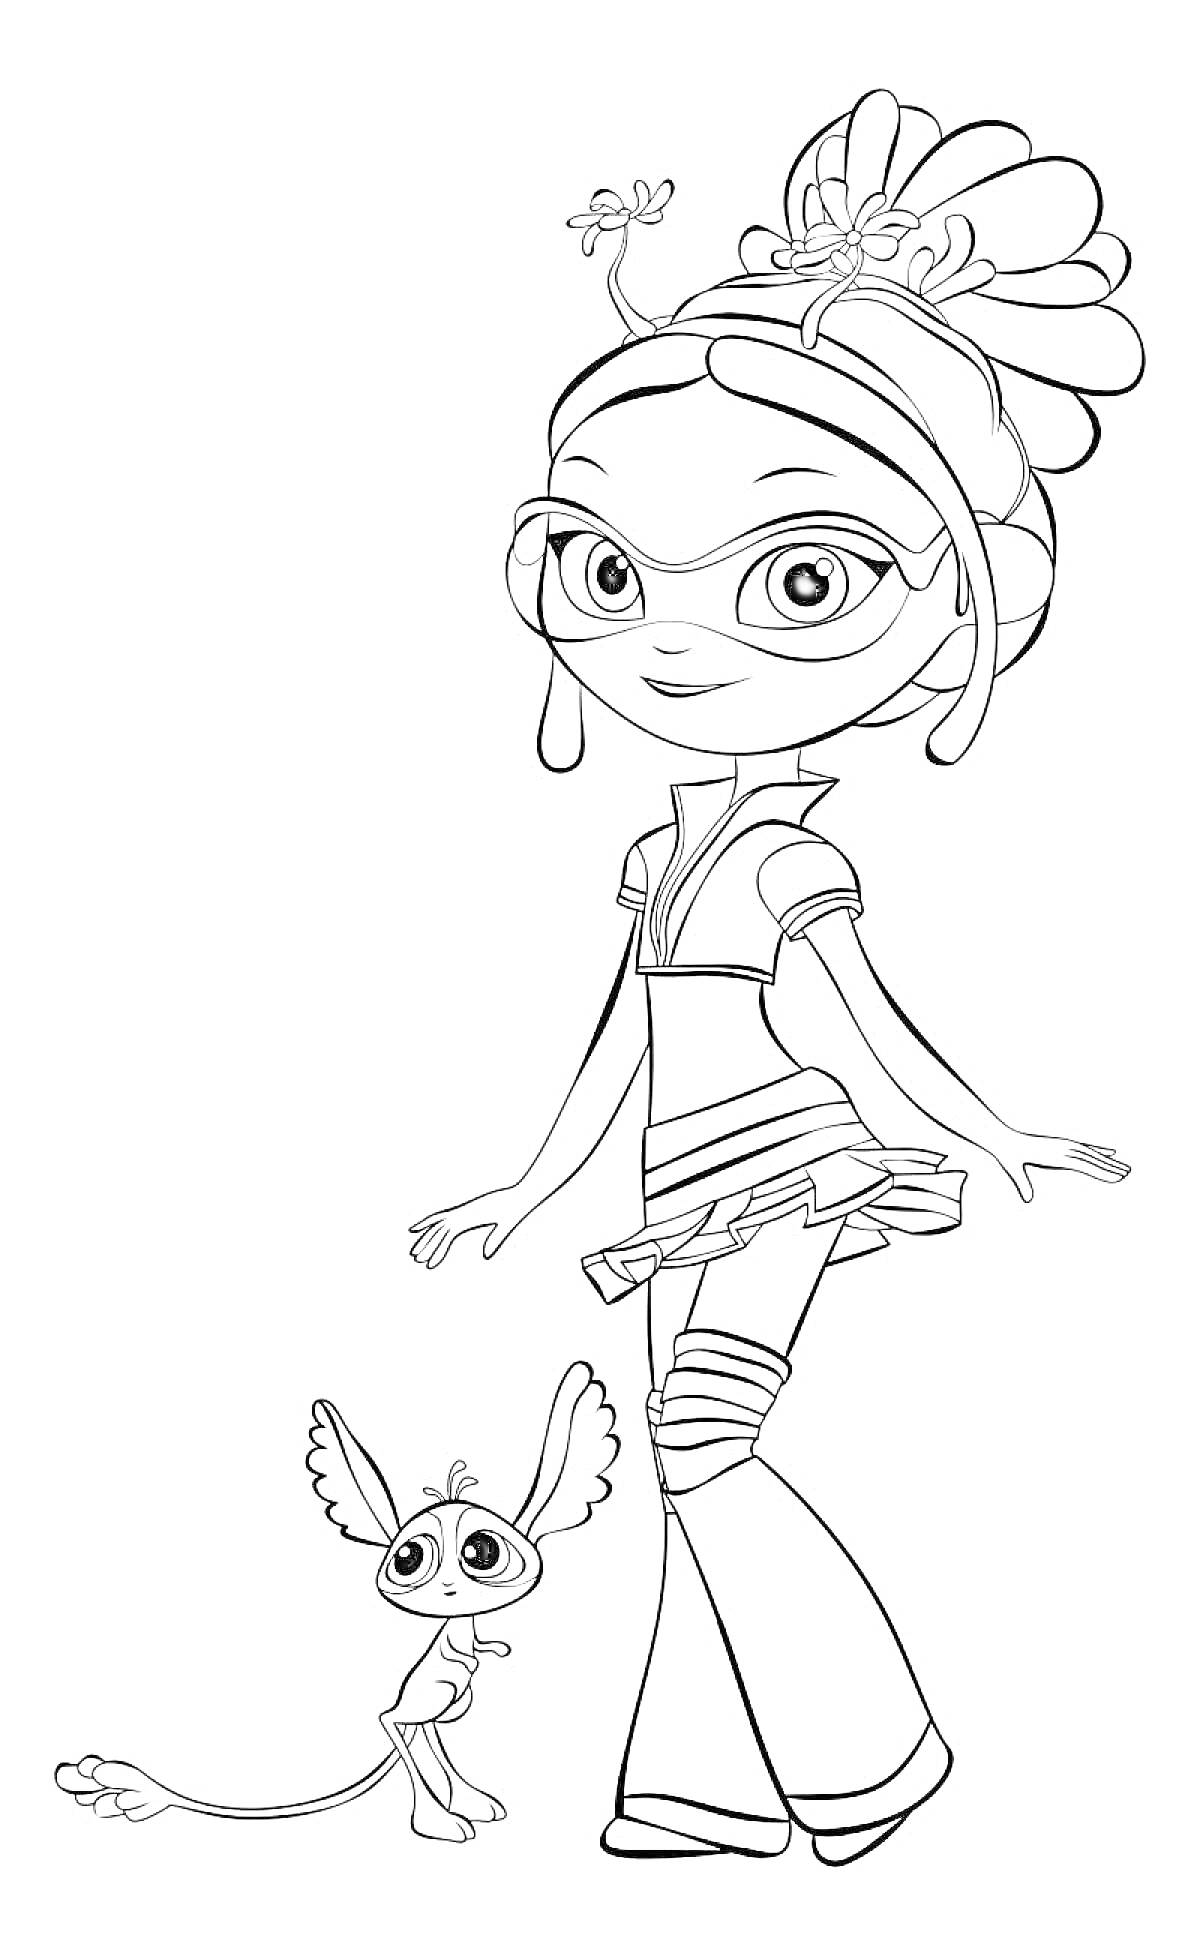 Раскраска Девочка из сказочного патруля с маленьким зверьком